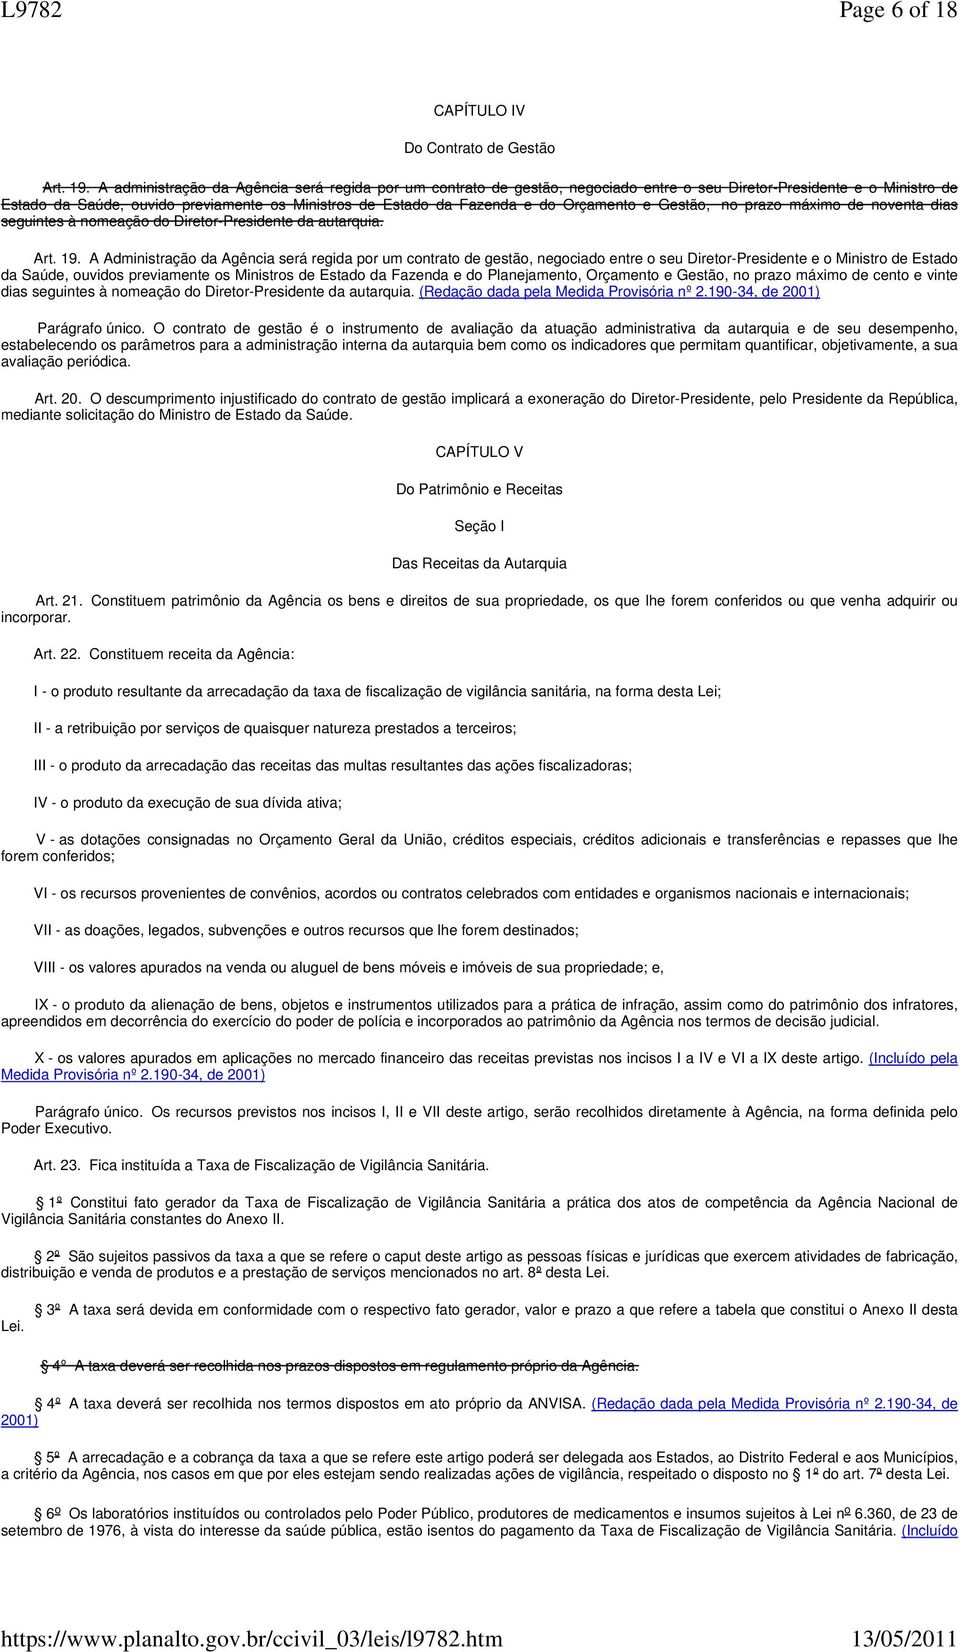 Orçamento e Gestão, no prazo máximo de noventa dias seguintes à nomeação do Diretor-Presidente da autarquia. Art. 19.